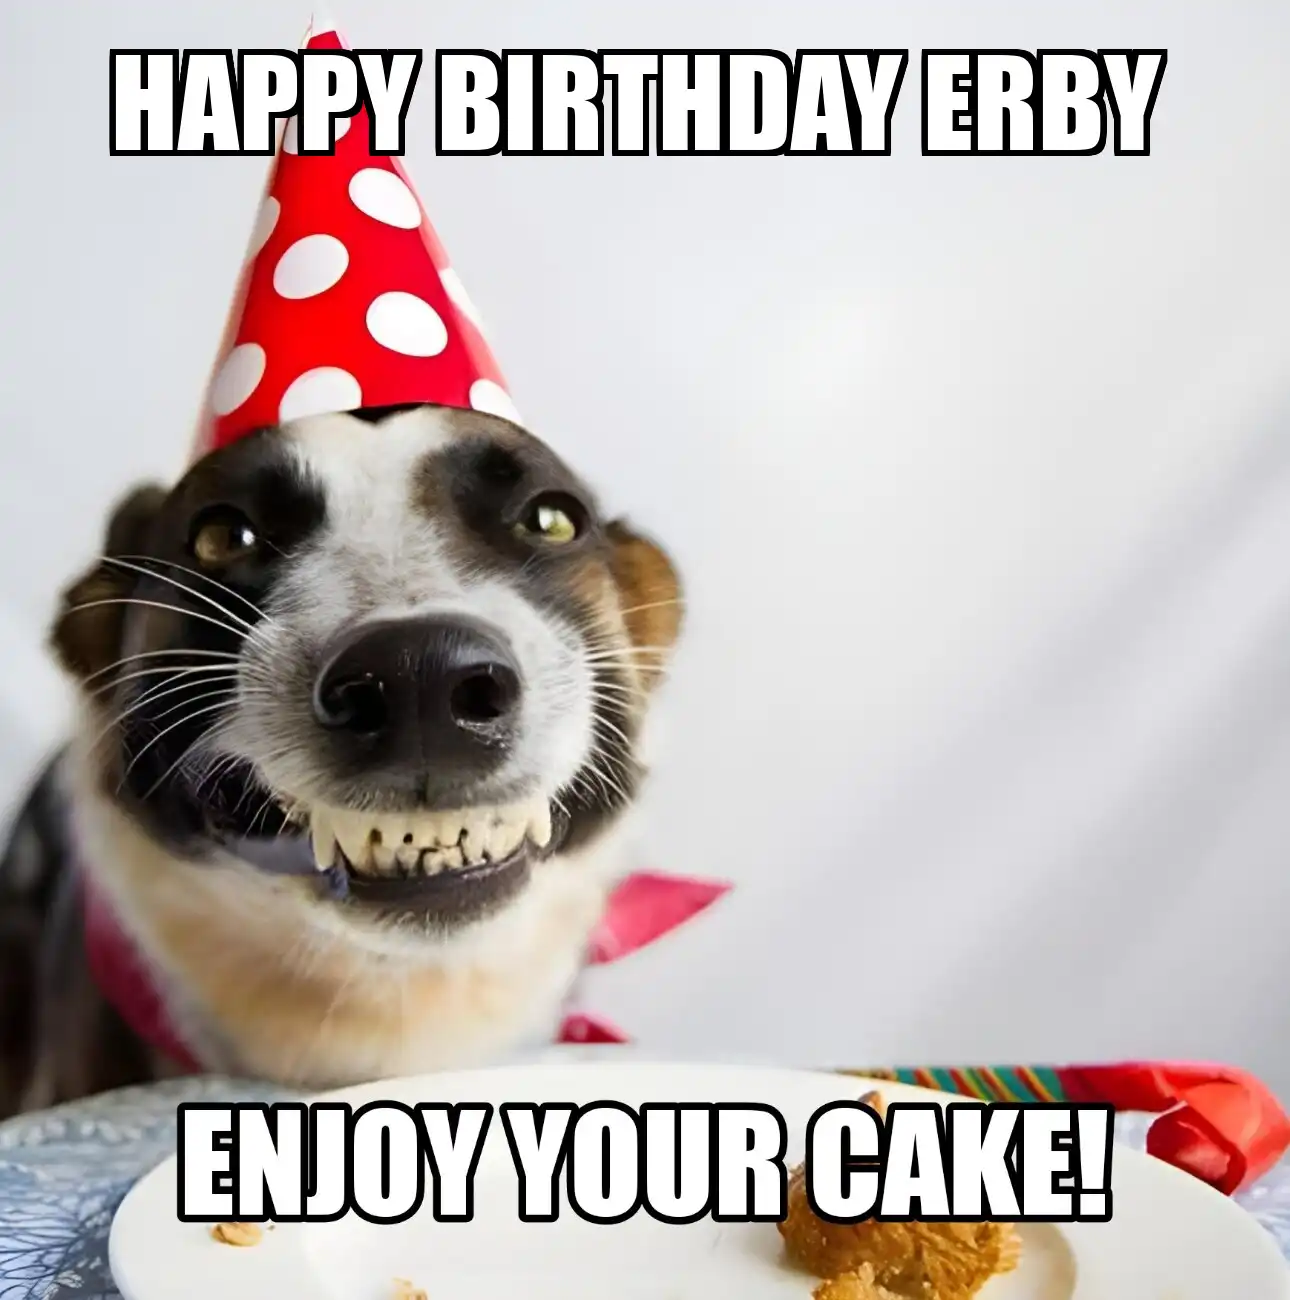 Happy Birthday Erby Enjoy Your Cake Dog Meme